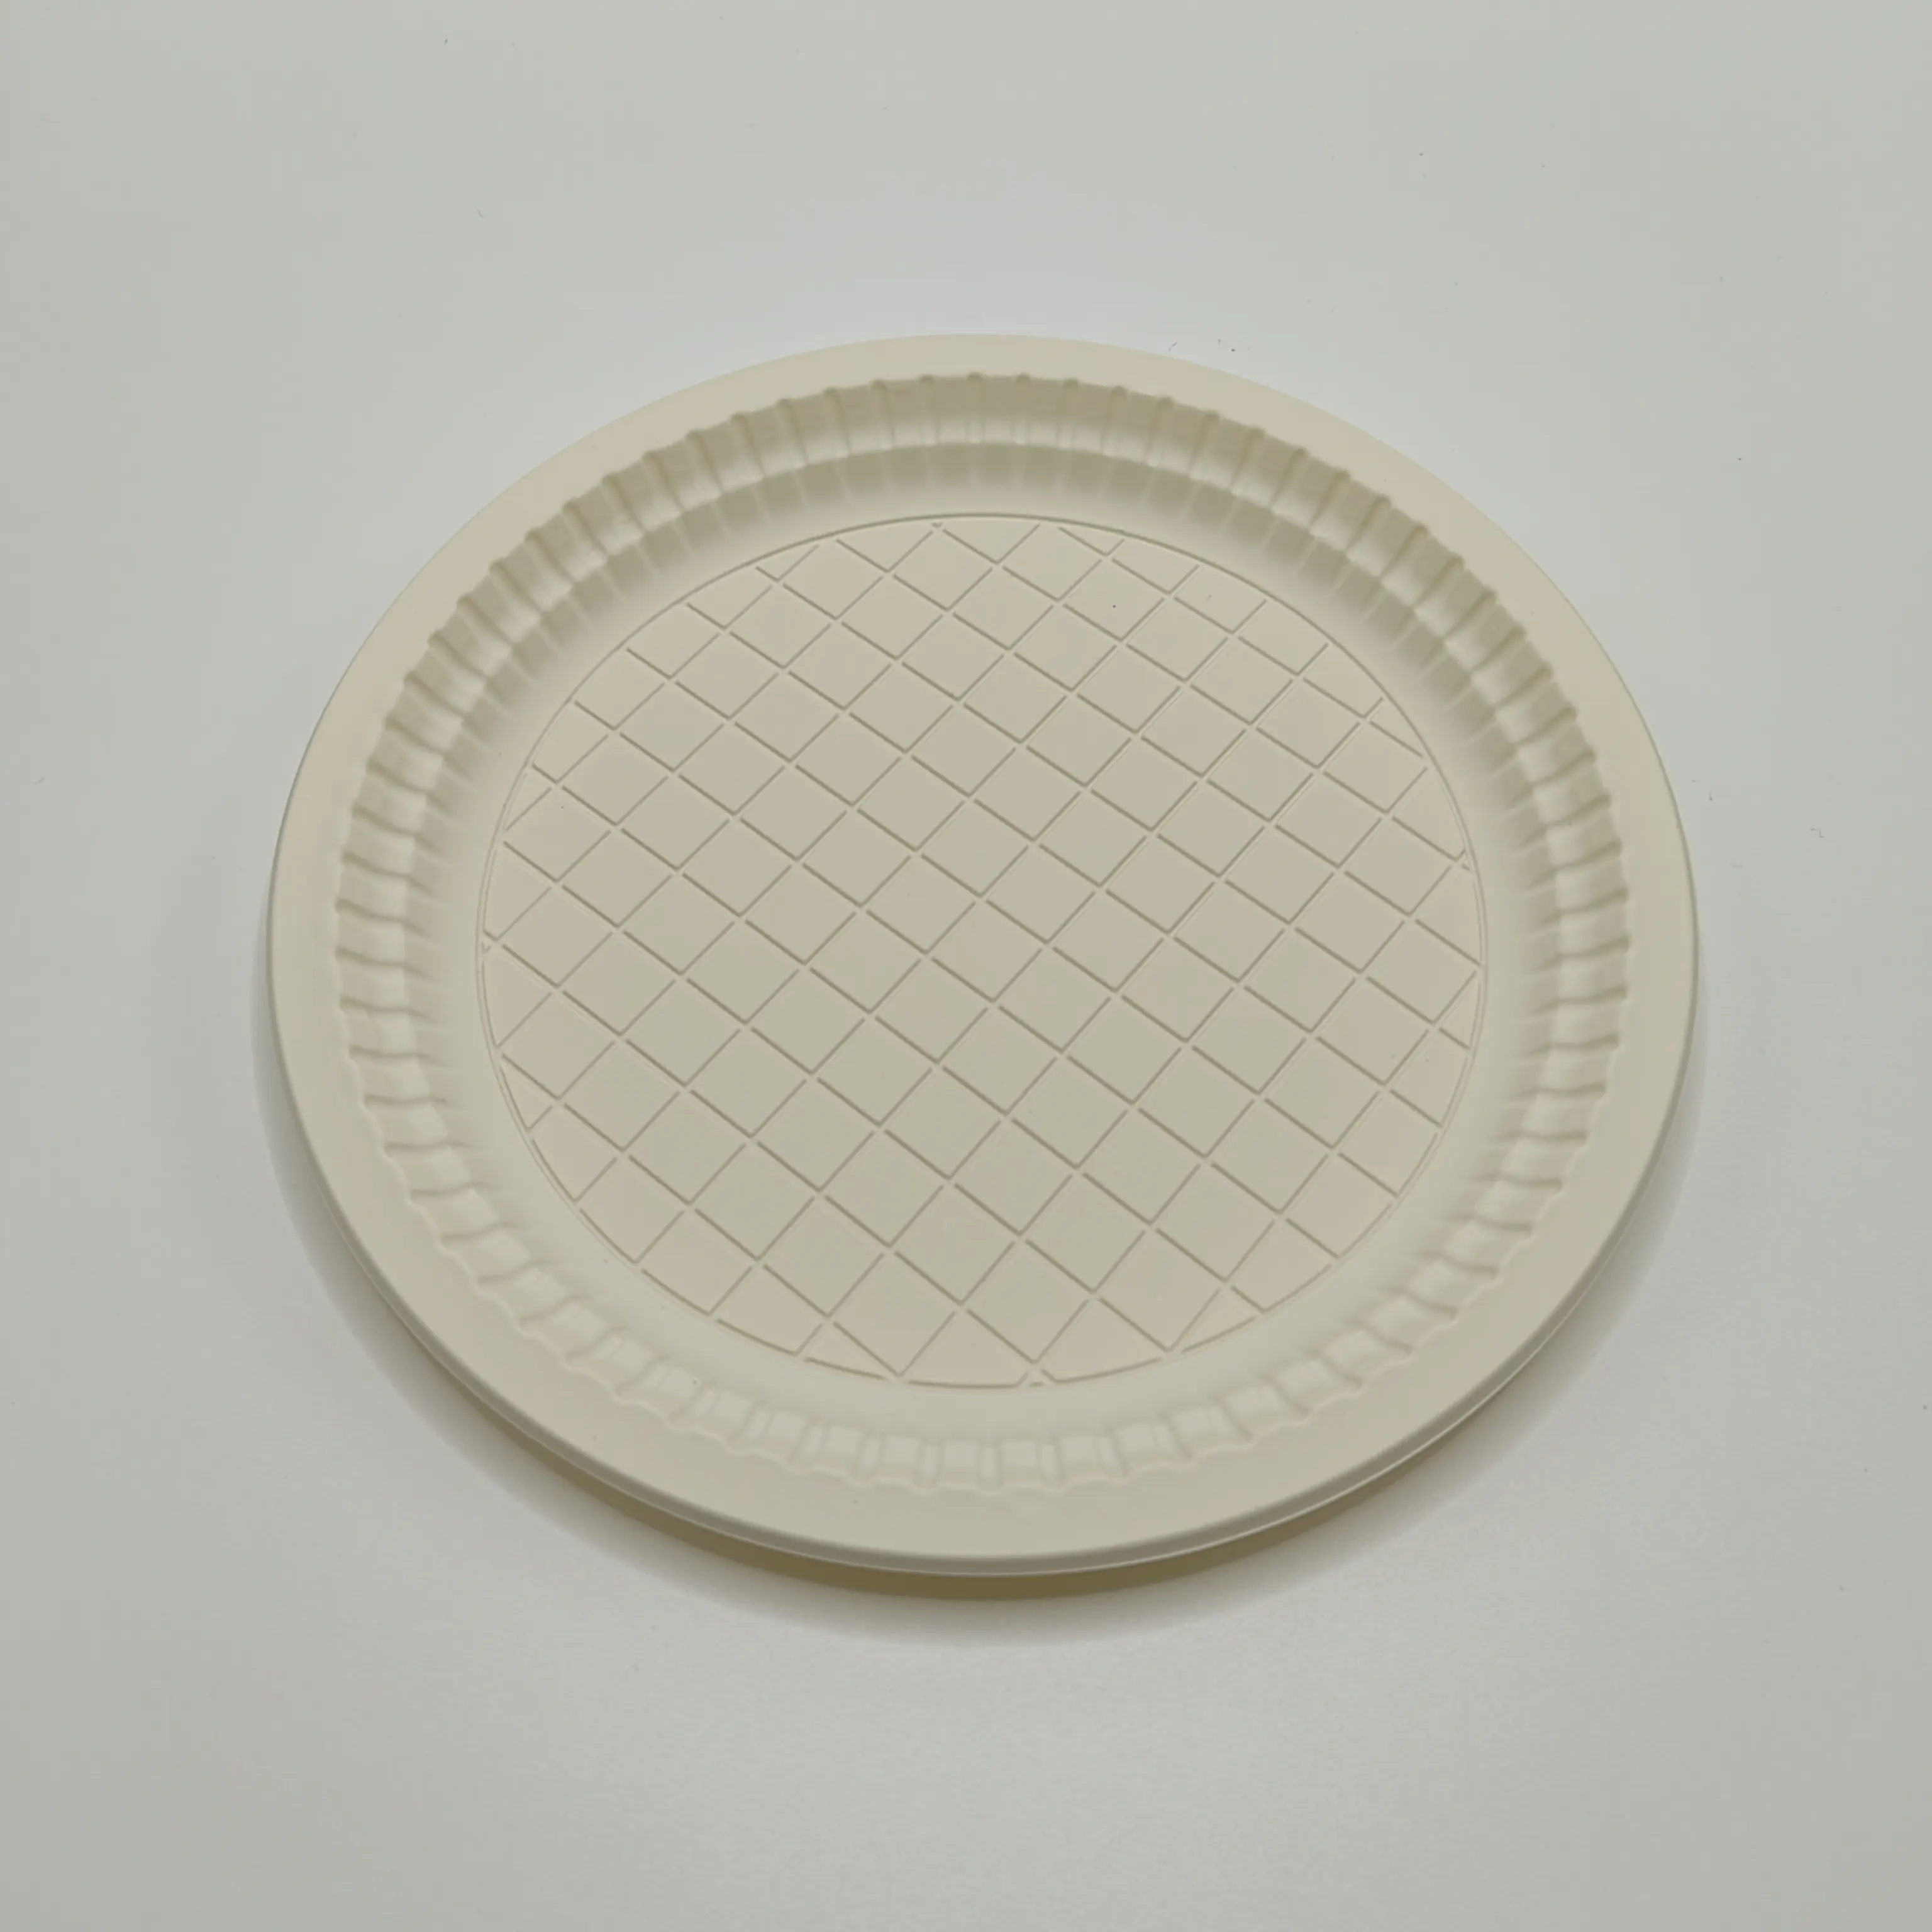 9 "customizável placas redondas do papel Compostable descartável do amido de milho Greaseproof e Microwavable 9 polegadas